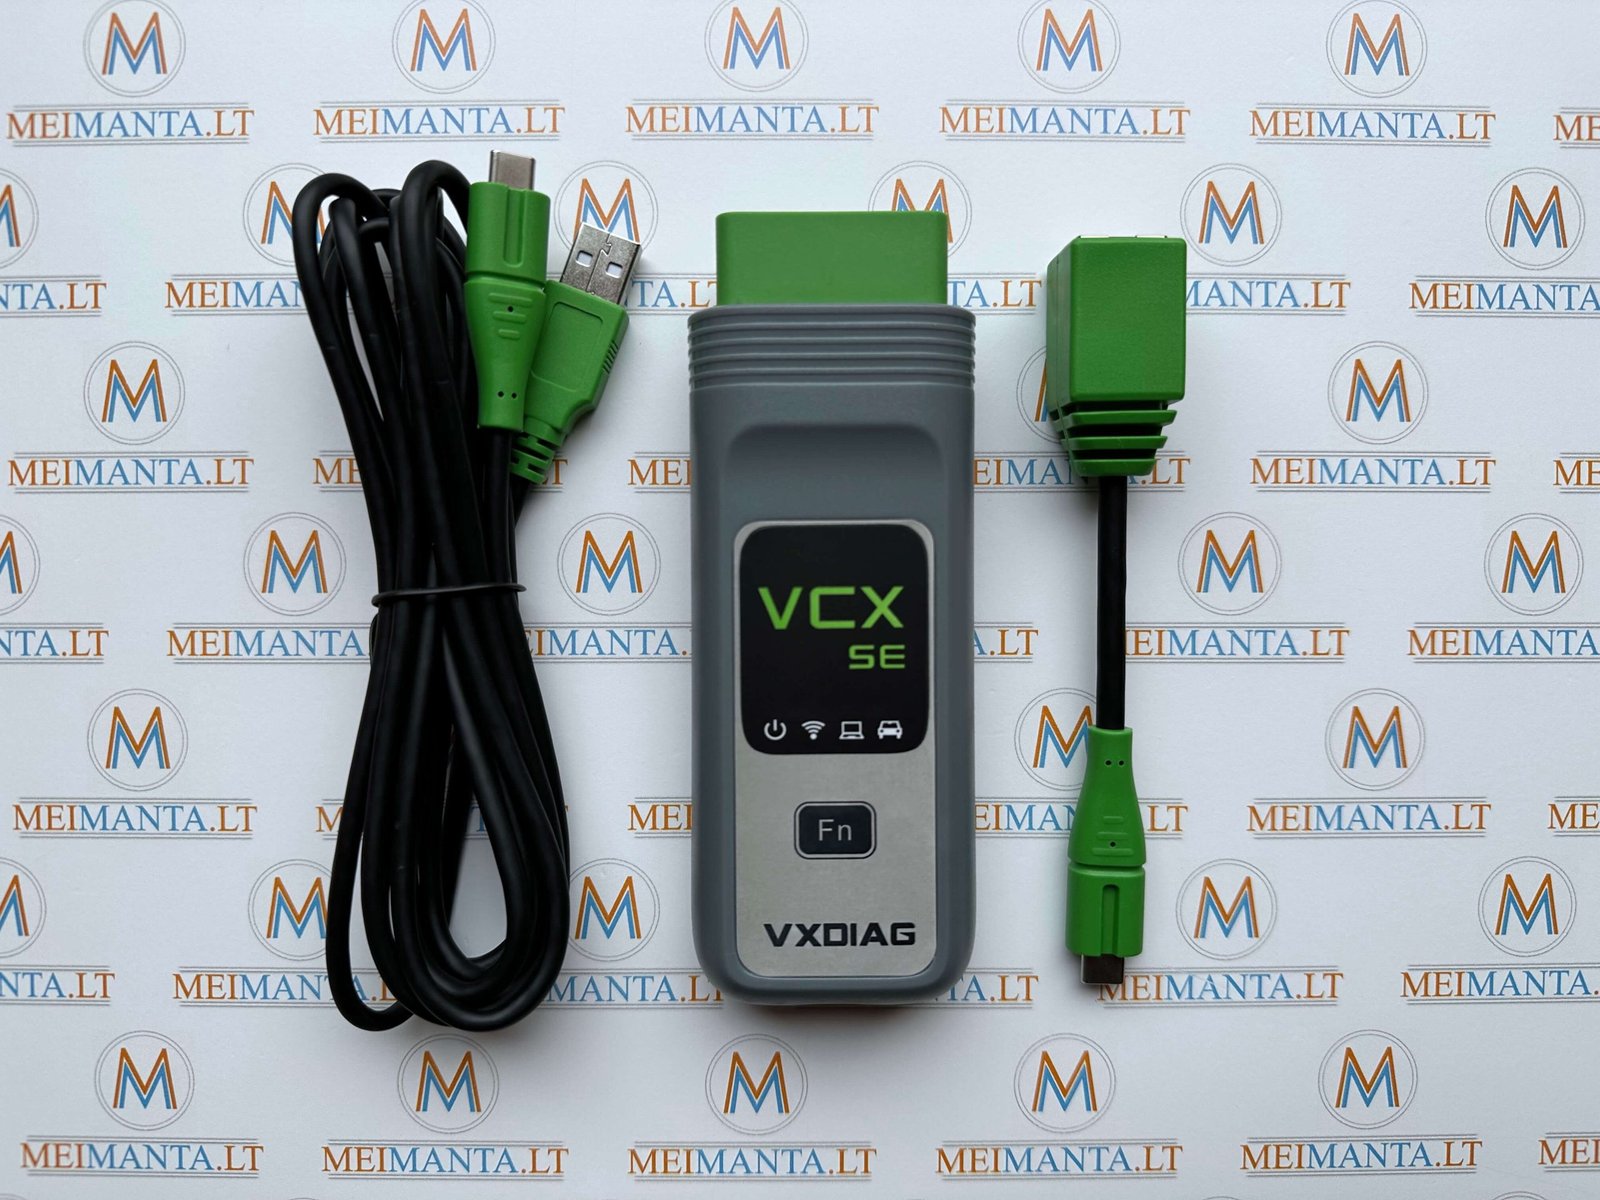 VXDIAG VCX SE 13in1 (USB, Wi-Fi, LAN)